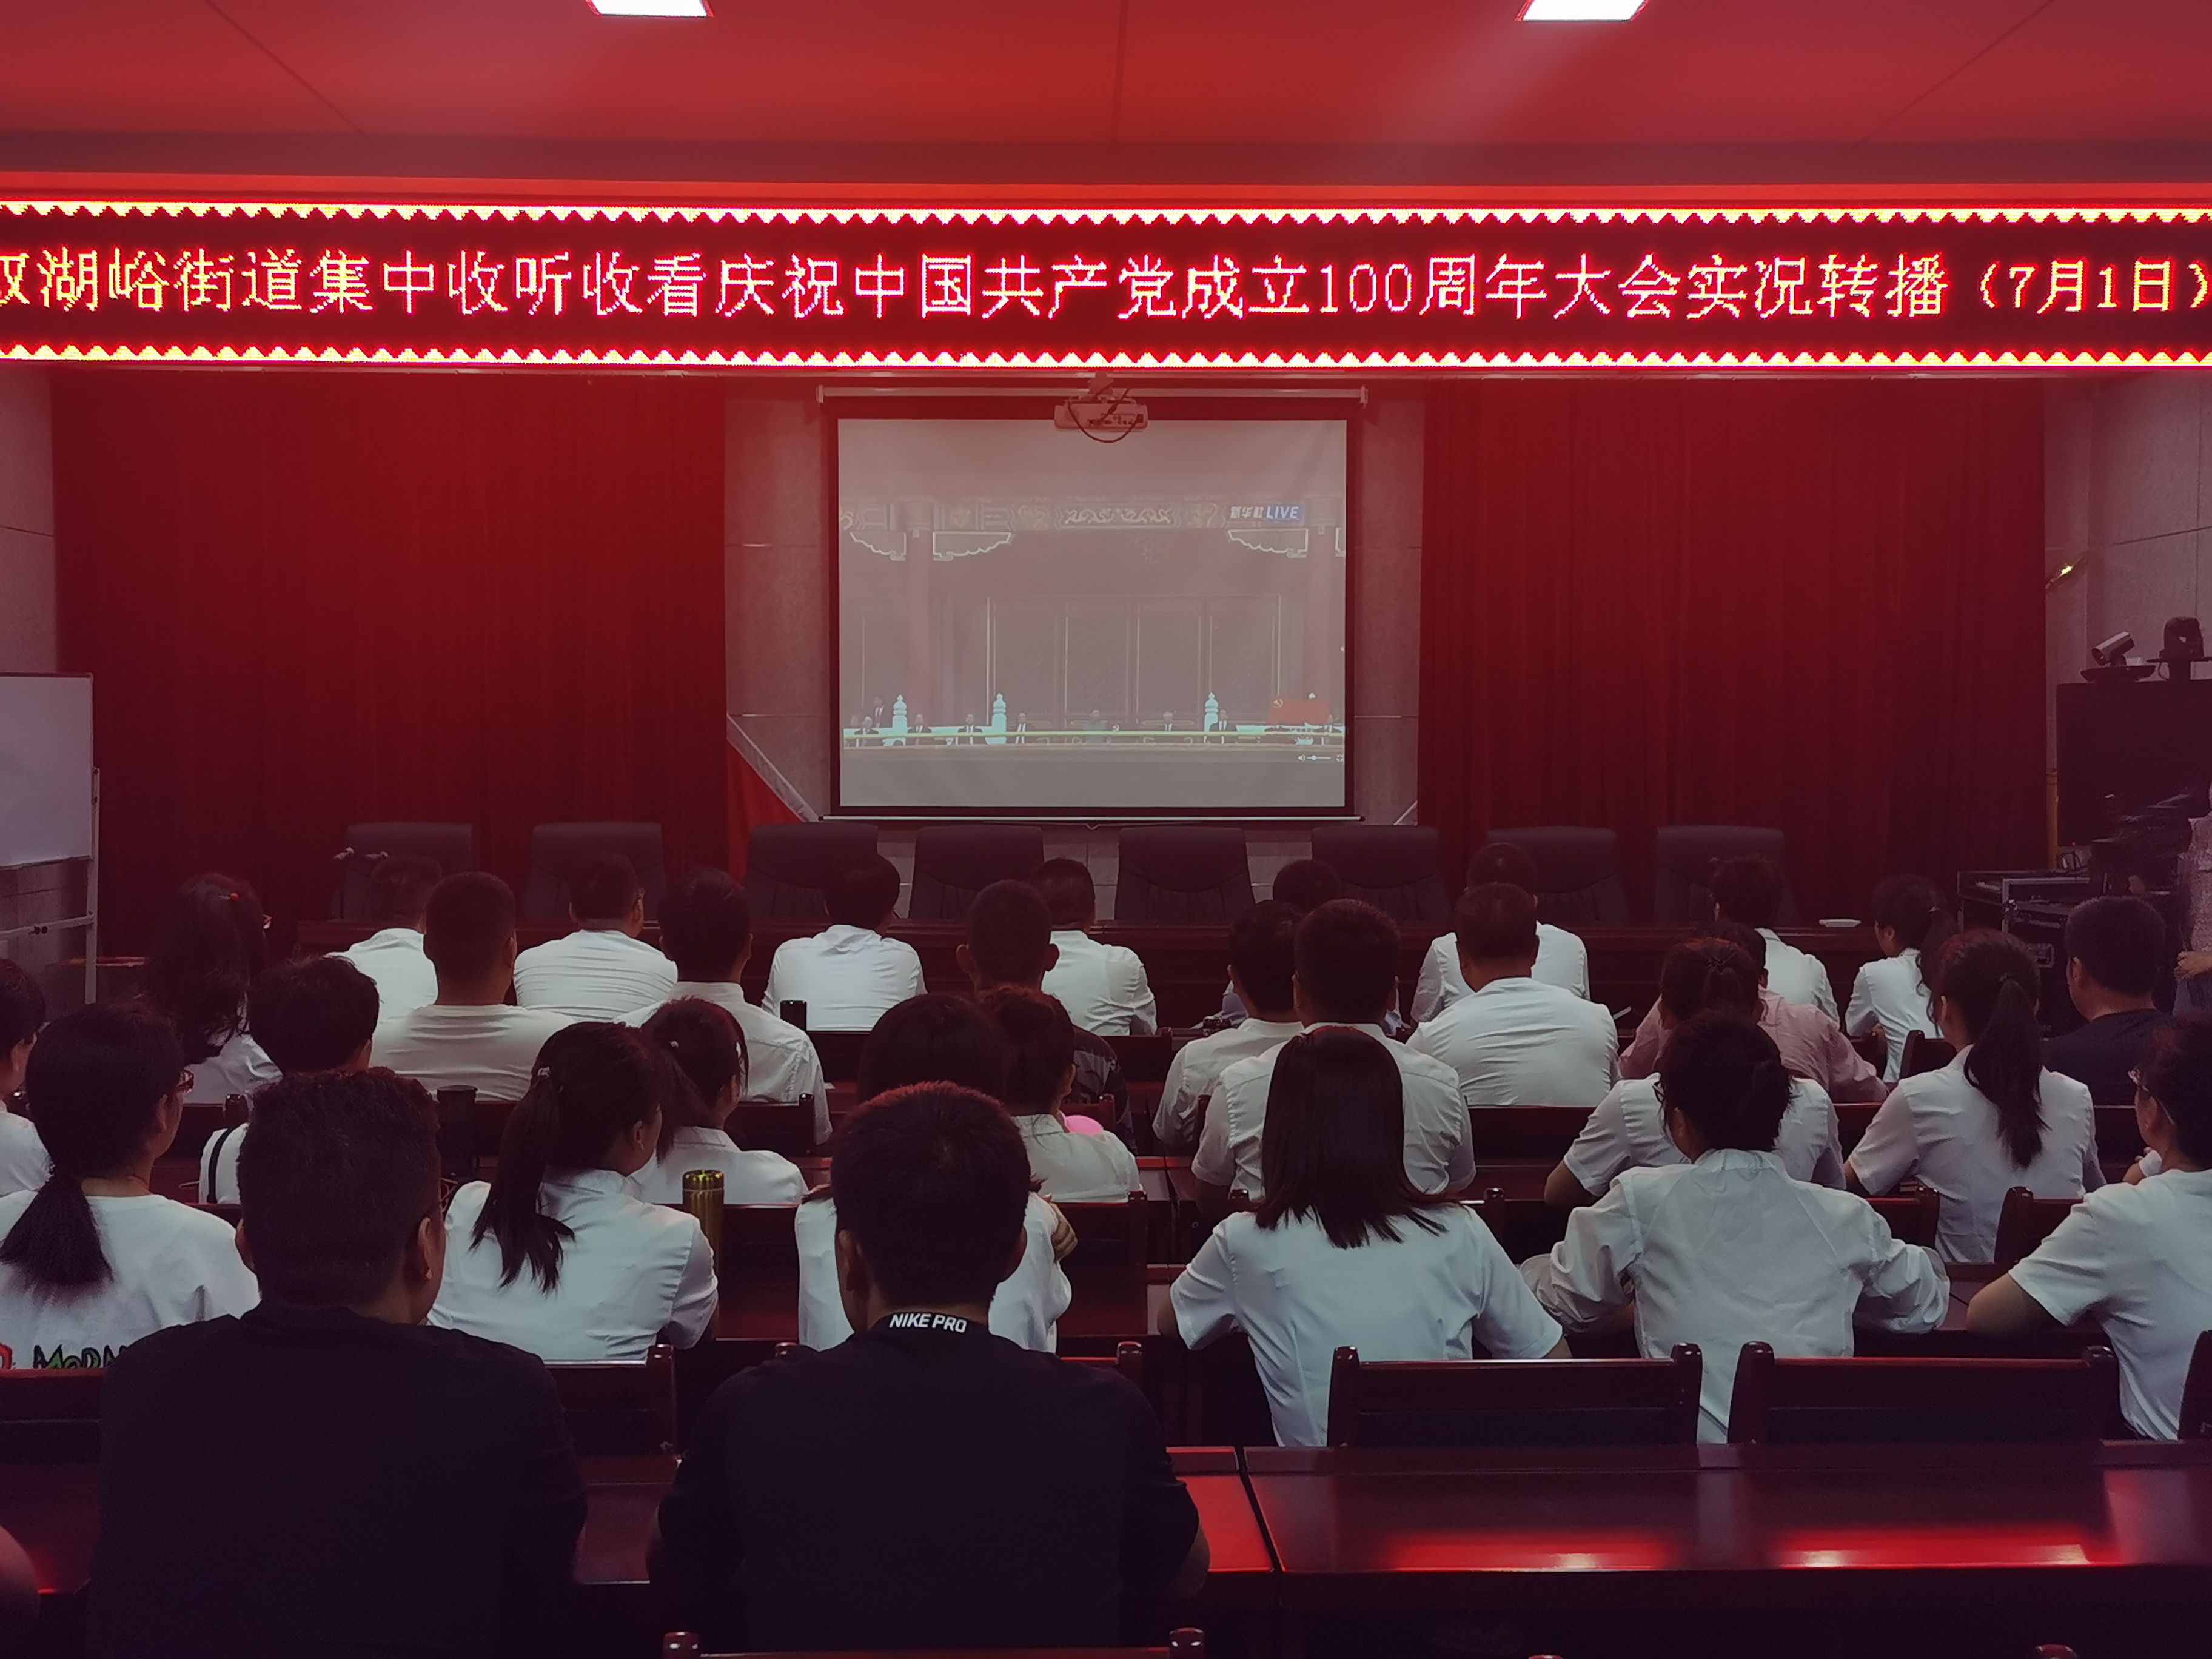 双湖峪街道观看庆祝中国共产党成立100周年大会实况转播